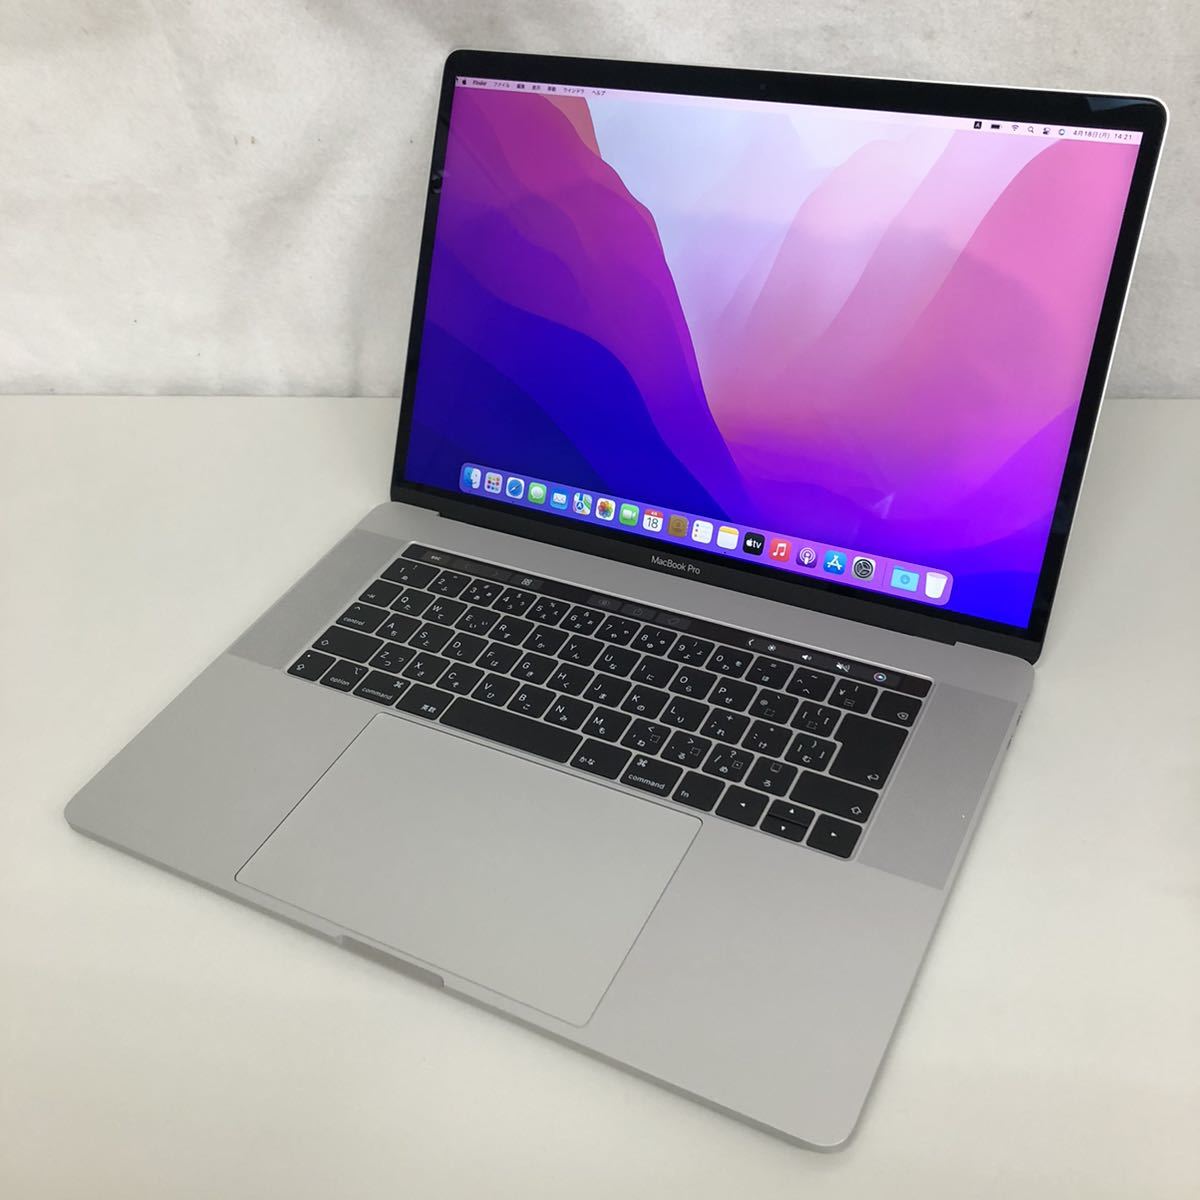 【ジャンク 液晶・スピーカー不良】Apple MacBook Pro 15インチ 2018 MR962J/A Monterey/Core i7 2.2GHz/16GB/256GB/シルバー/A1990_画像2